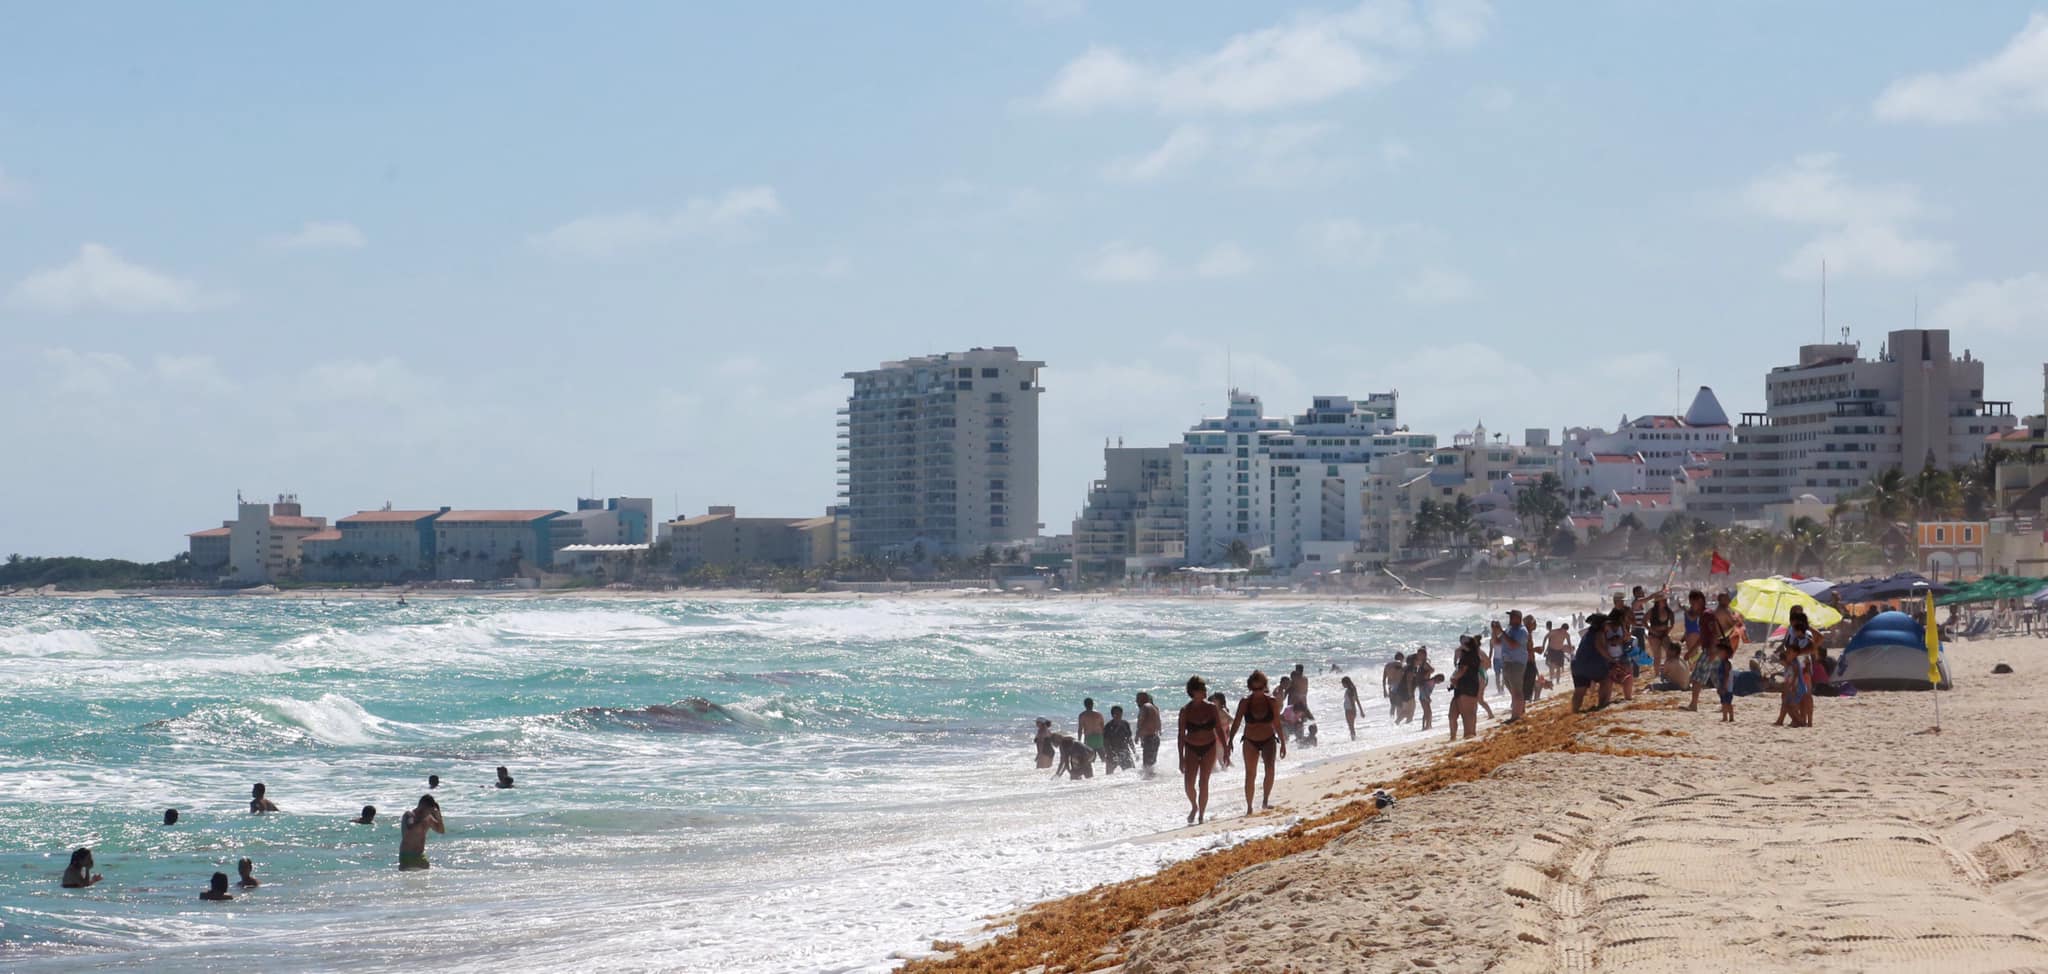 Refuerzan seguridad ante temporada de ‘Spring break’ en Cancún